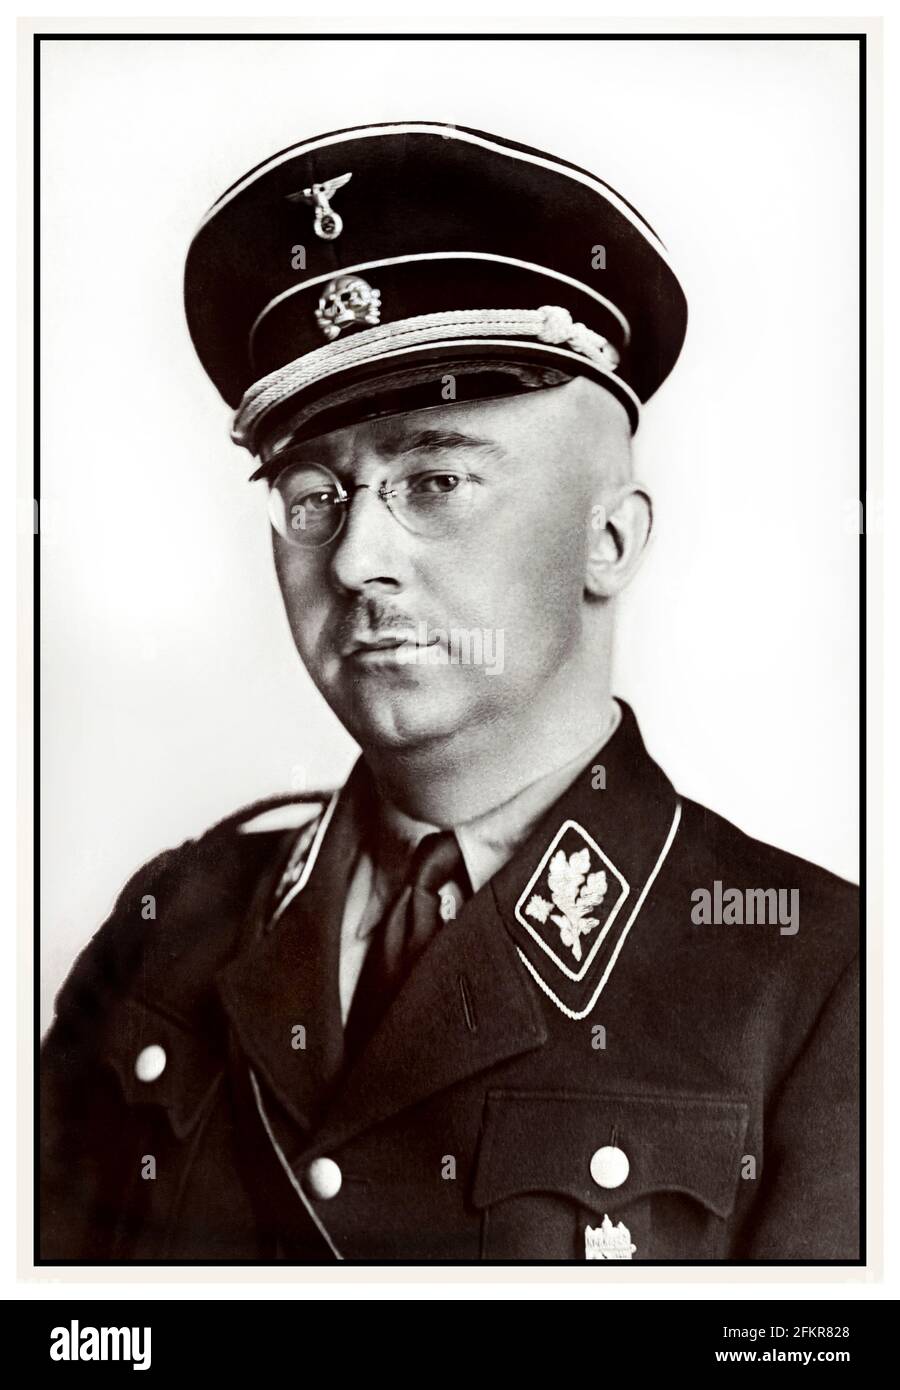 Heinrich Himmler Porträt in Nazi Waffen SS-Uniform 1940er Jahre deutscher nationalsozialistischer Politiker Nazi-Militärkommandeur Geheimpolizei. Himmler war einer der mächtigsten Männer in Nazi-Deutschland und einer der Menschen, die am unmittelbarsten für den Holocaust verantwortlich waren. Erleichterte Völkermord in ganz Europa und im Osten. Beging Selbstmord im Jahr 1945, nachdem er auf der Flucht unter einer anderen Identität gefangen genommen wurde. Zweiter Weltkrieg Stockfoto